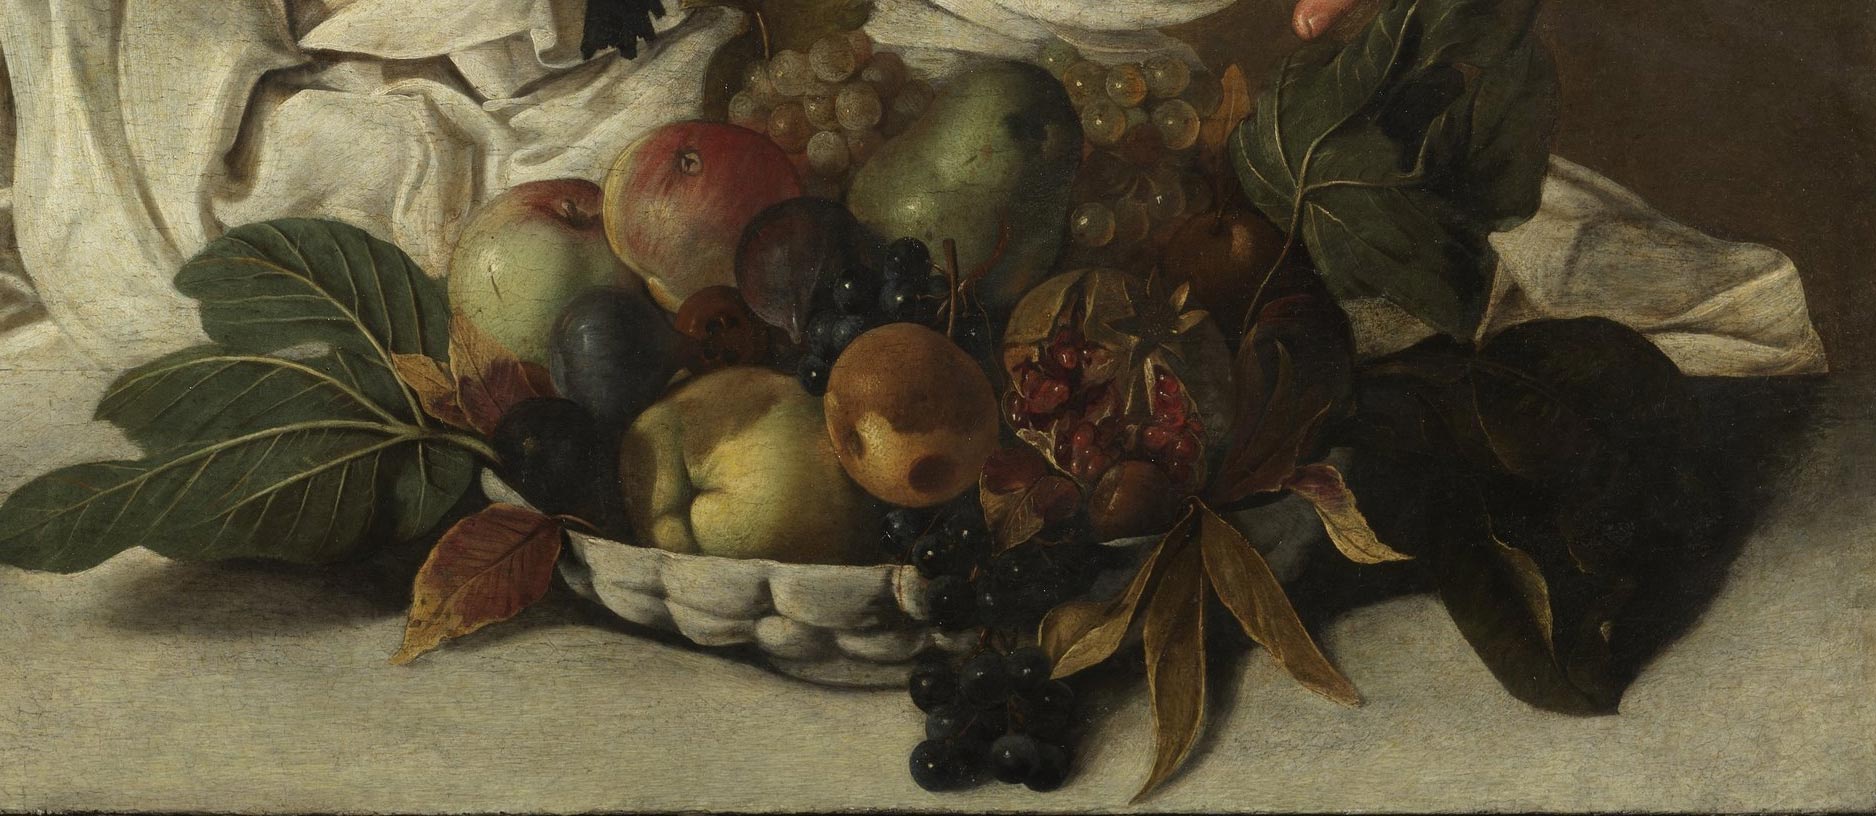 The fruit basket